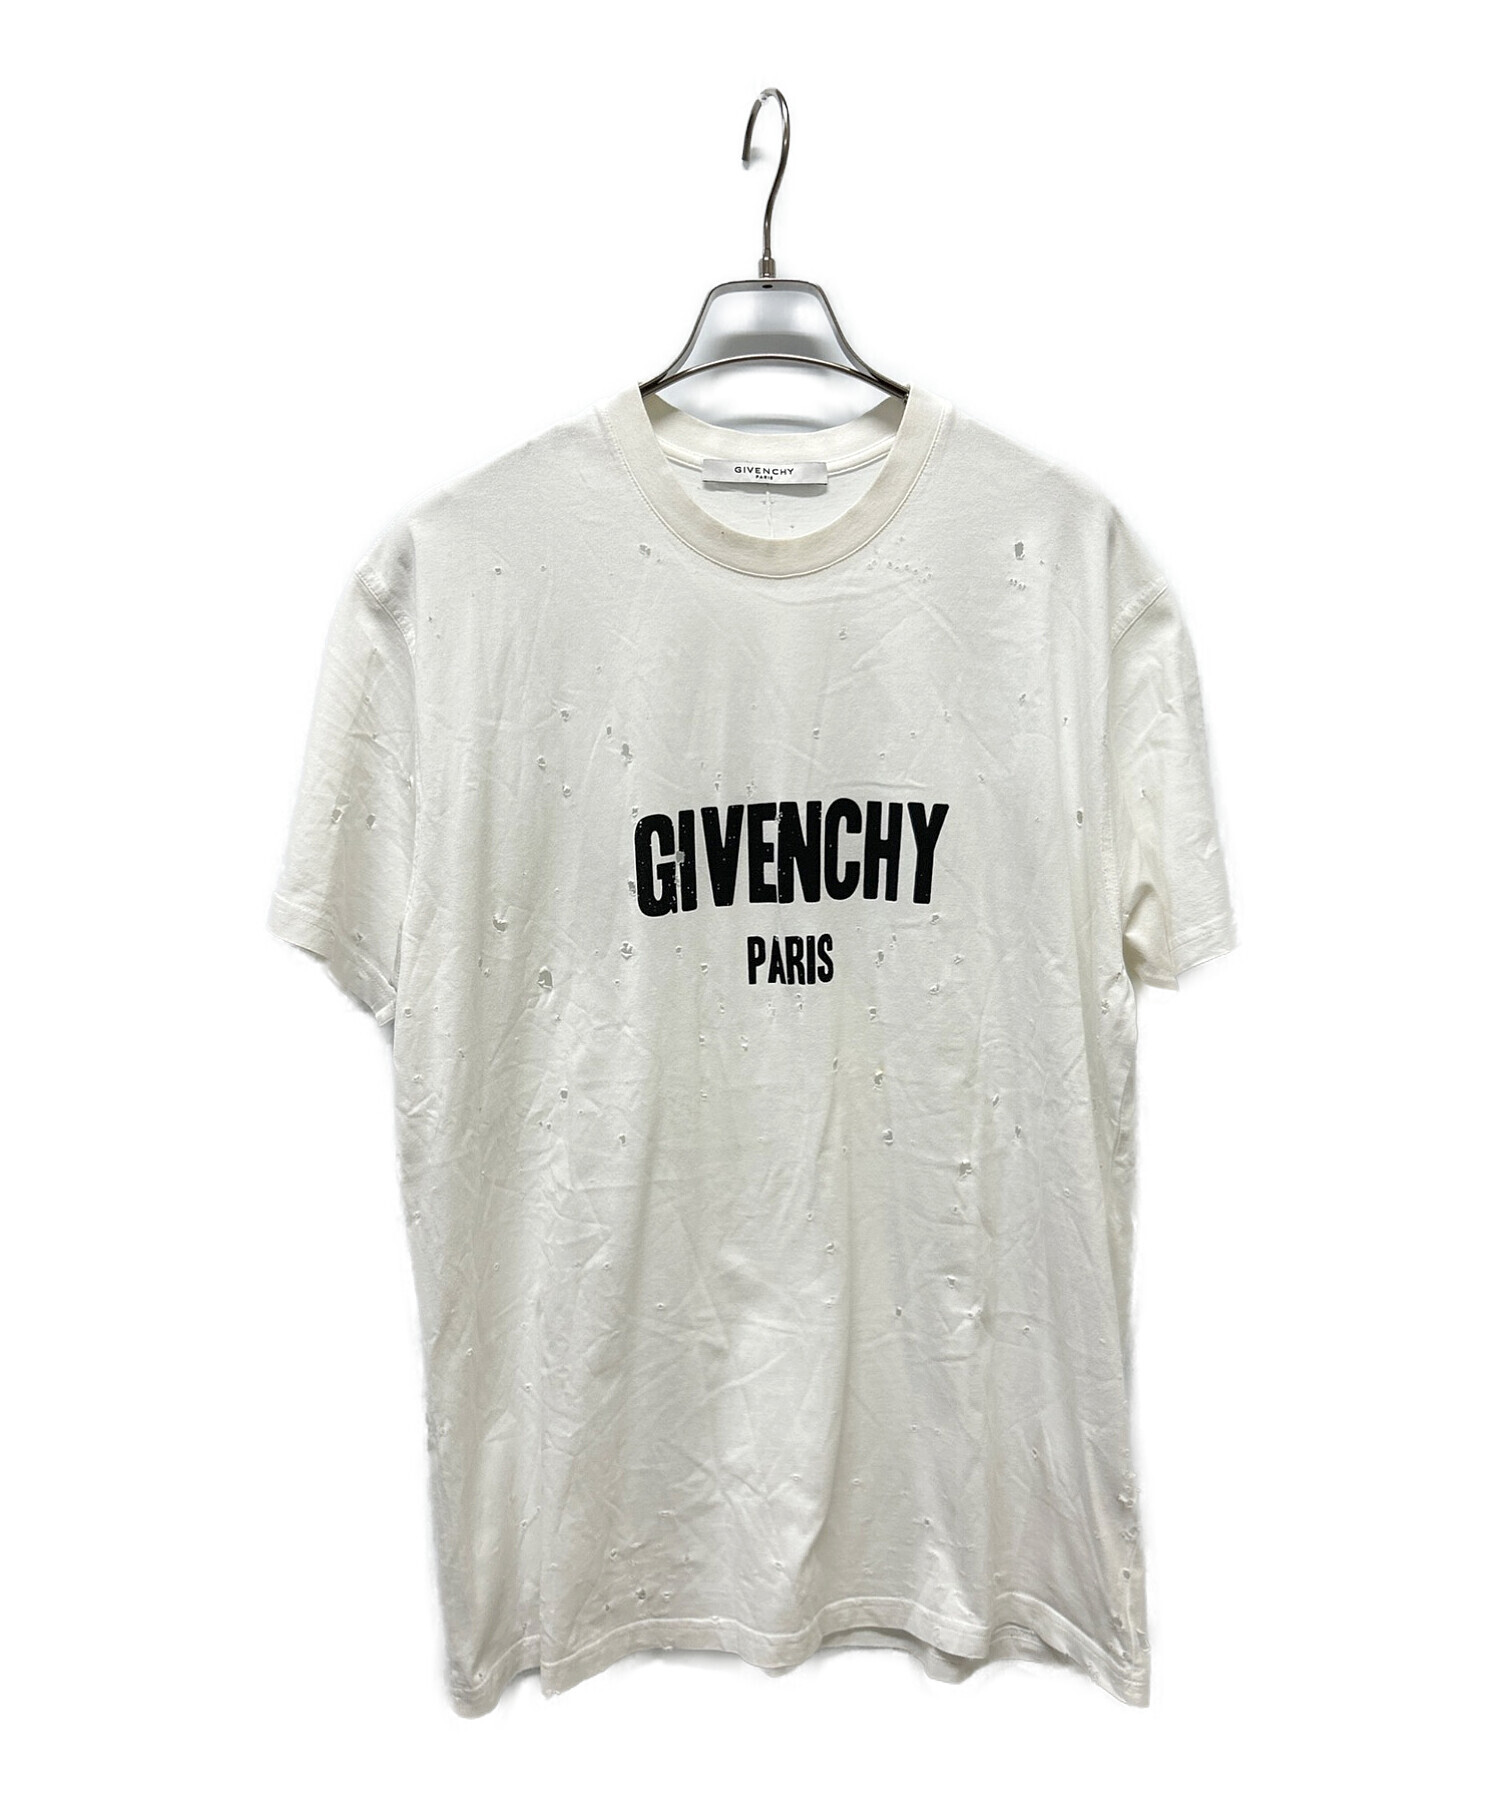 Givenchy ジバンシィ 希少 ネイキッドウーマン tシャツ xs